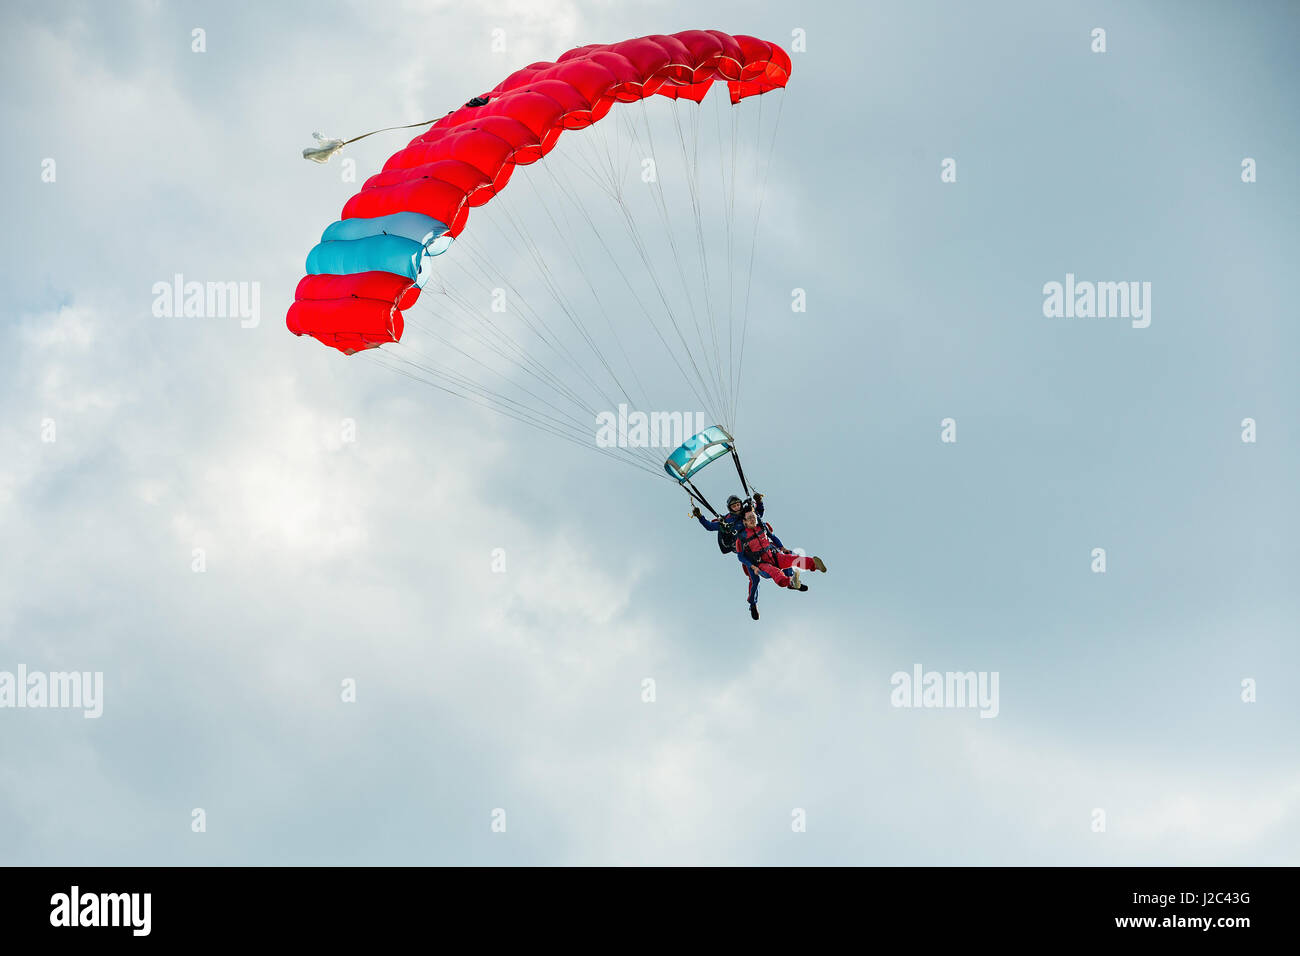 Pribram, cze - août 19, 2016. tandem parapente rouge voler contre le ciel nuageux dans l'aéroport de pribram, République tchèque Banque D'Images